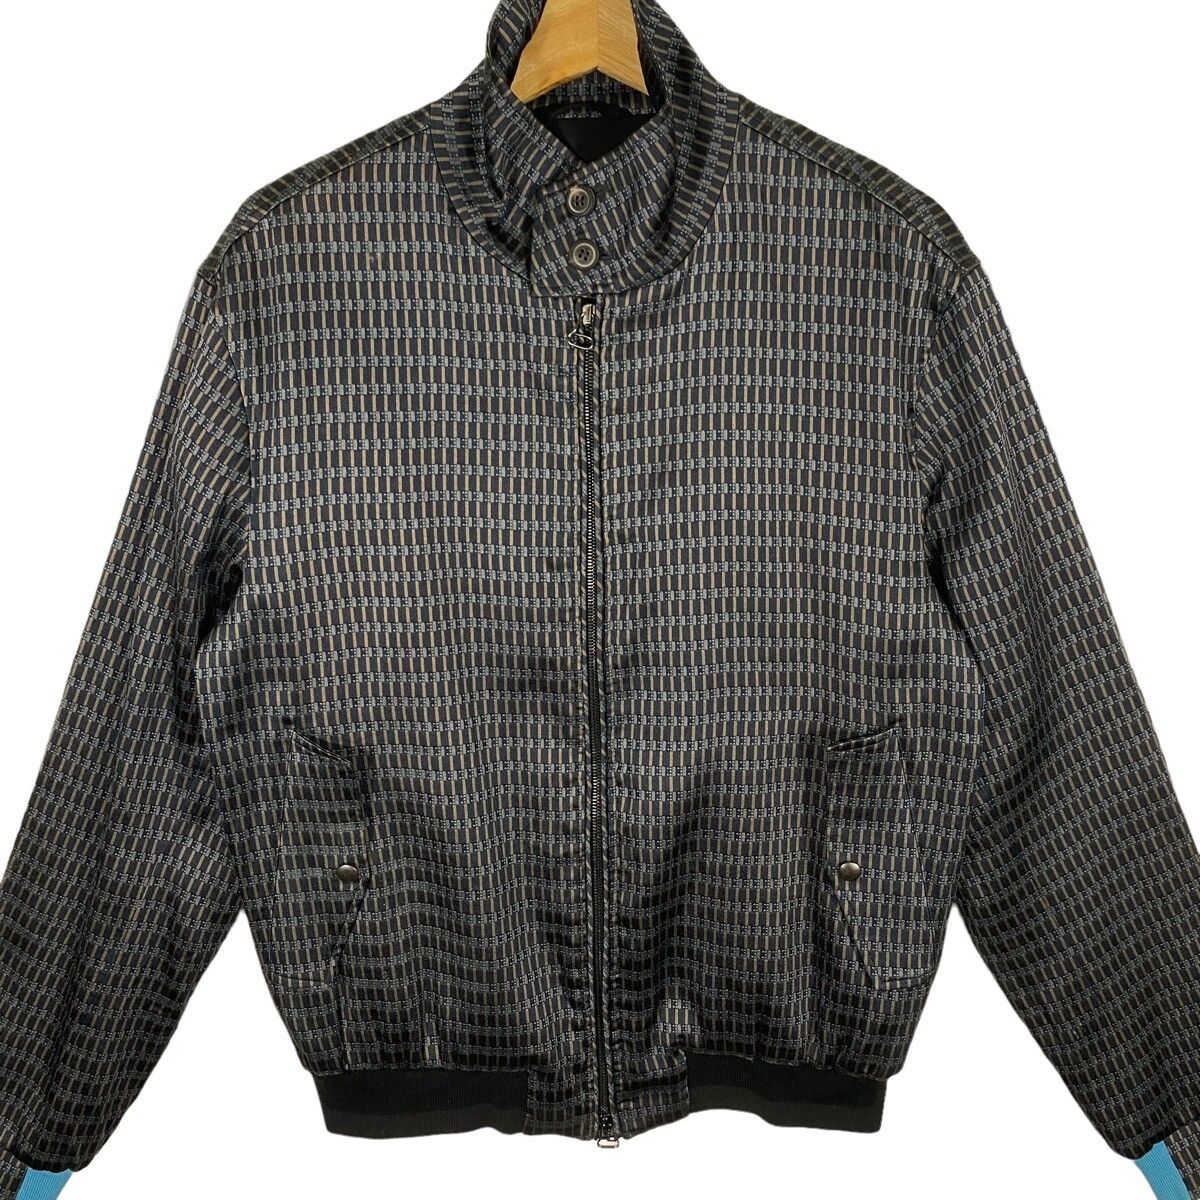 Vintage Lanvin Harrington Jacket Zipper 46 Size - 4